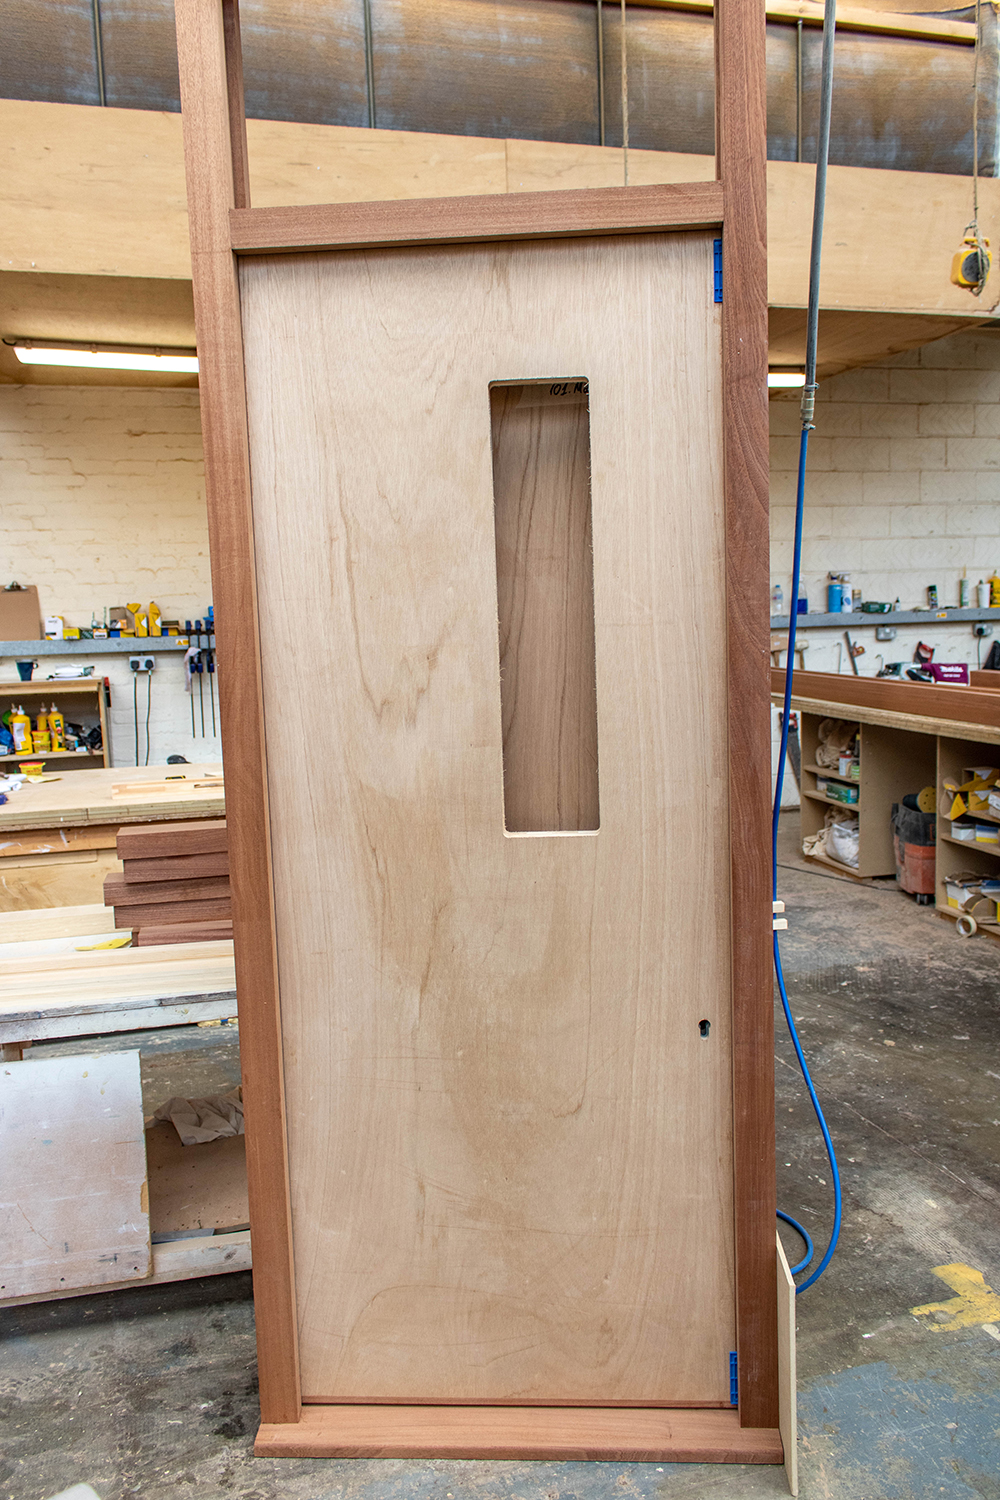 Wood door with small window slit